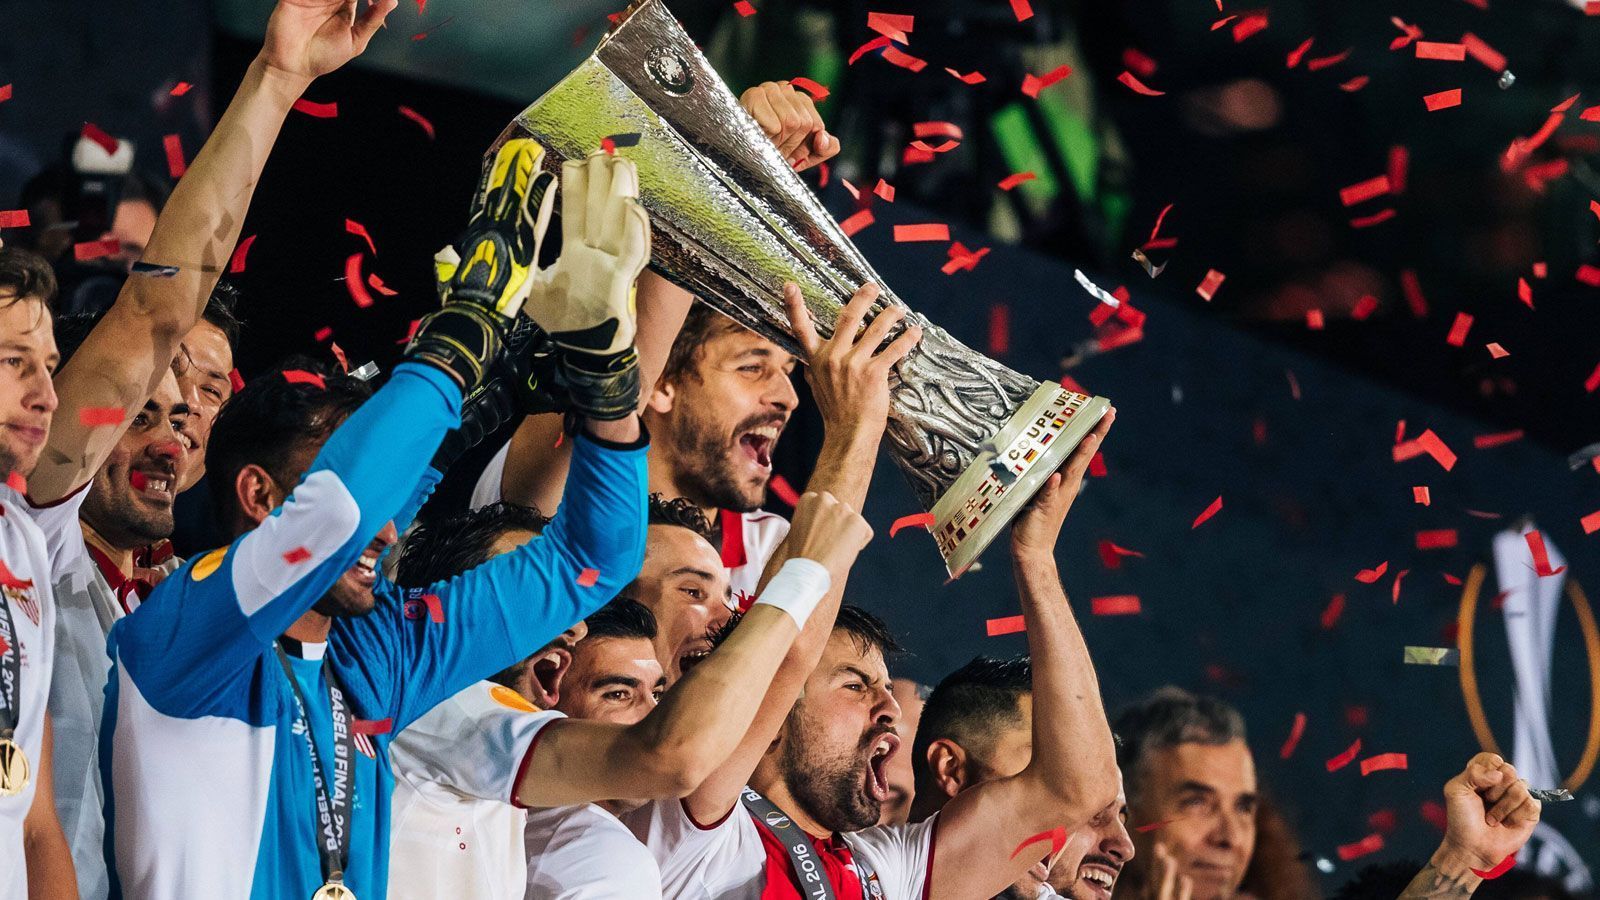 
                <strong>Sieg in der Europa-League 2015/16</strong><br>
                Aller guten Dinge sind drei: Auch 2016 heißt der Gewinner der Europa-League FC Sevilla. Gegen den von Jürgen Klopp trainierten FC Liverpool drehen die Andalusier das Endspiel in der zweiten Hälfte und gewinnen am Ende verdient mit 3:1.
              